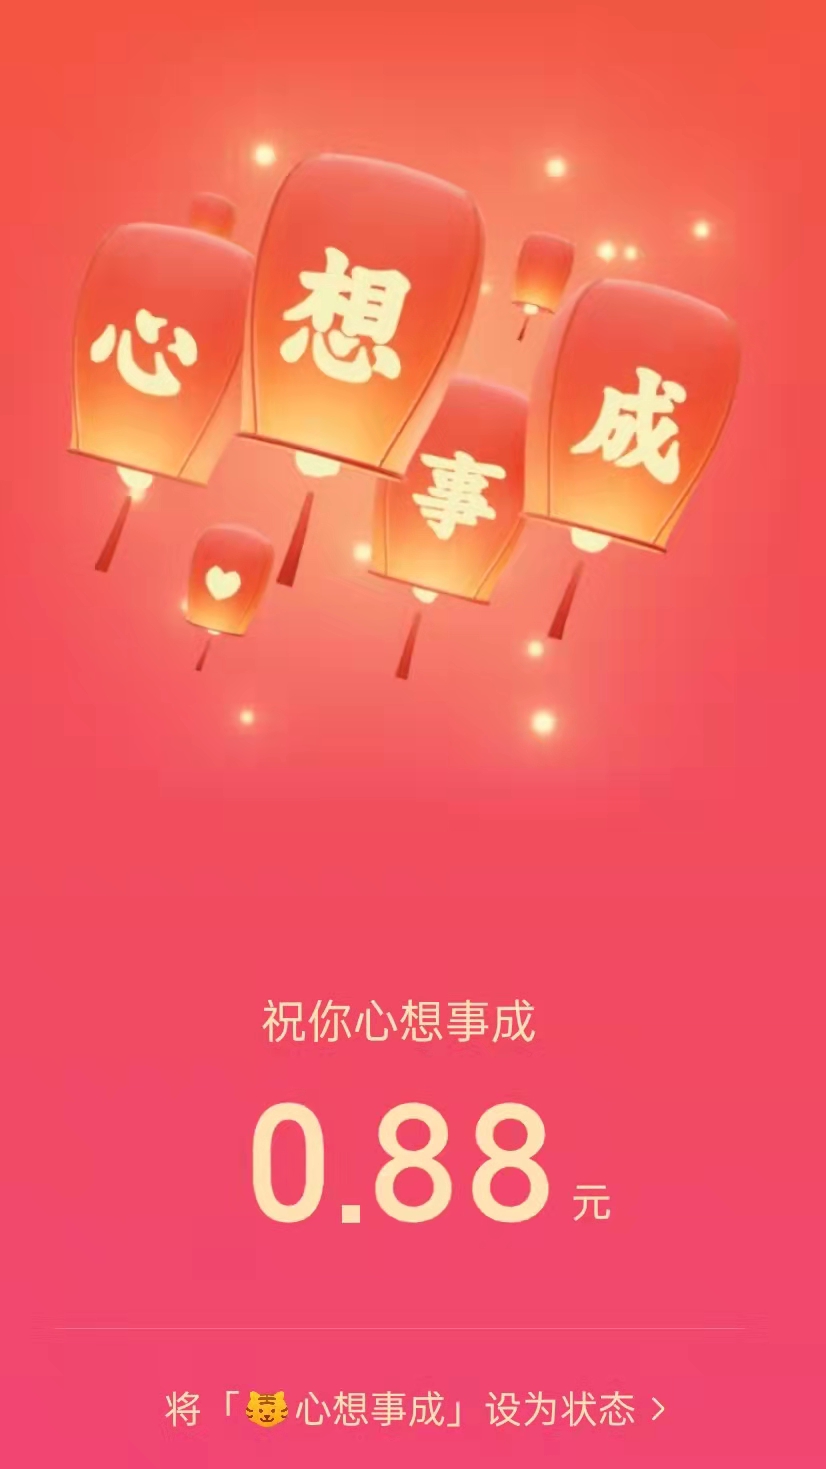 微信春节红包从撒钱到“挣钱” 品牌想要互动微信提供玩法